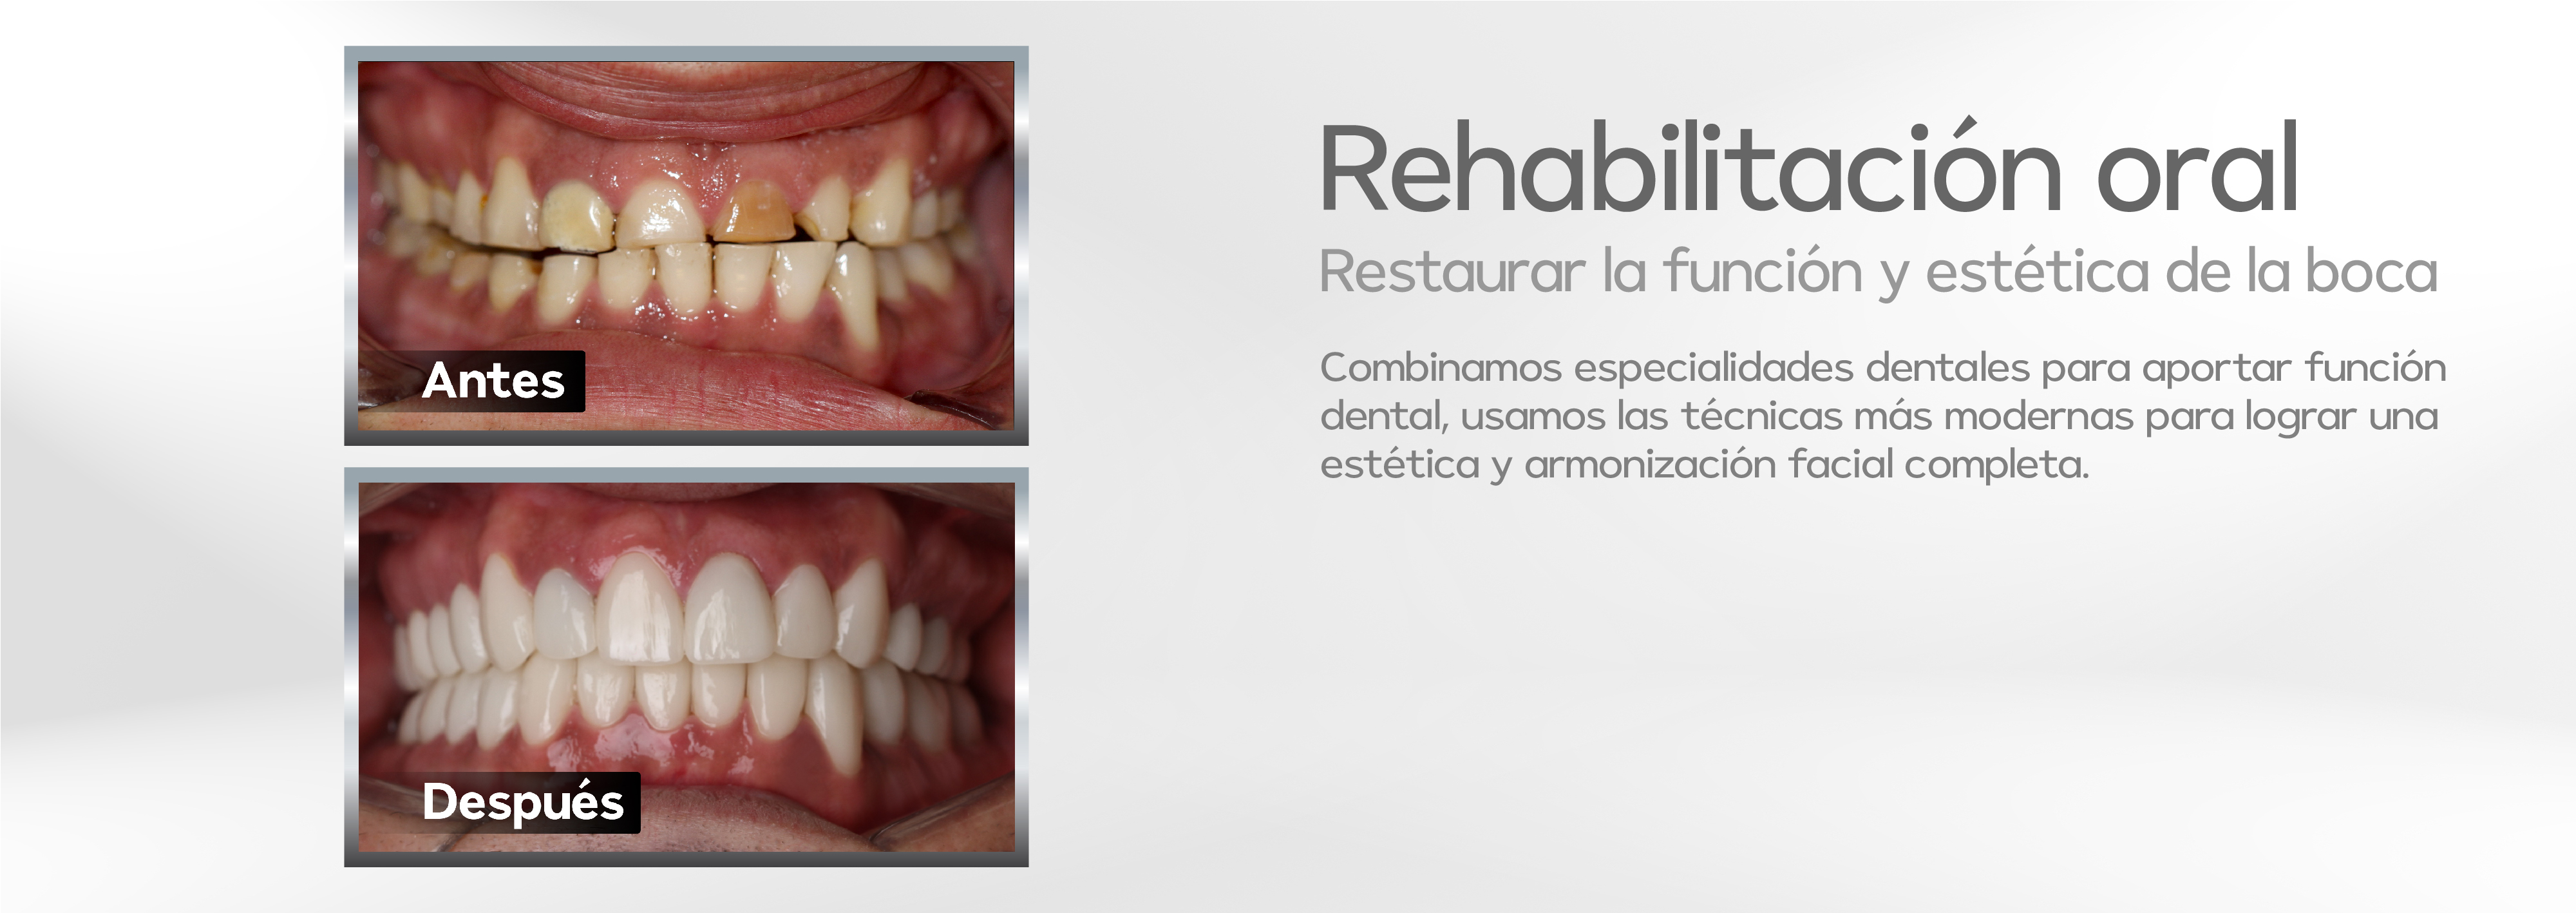 rehabilitación oral tello odontología cochabamba bolivia